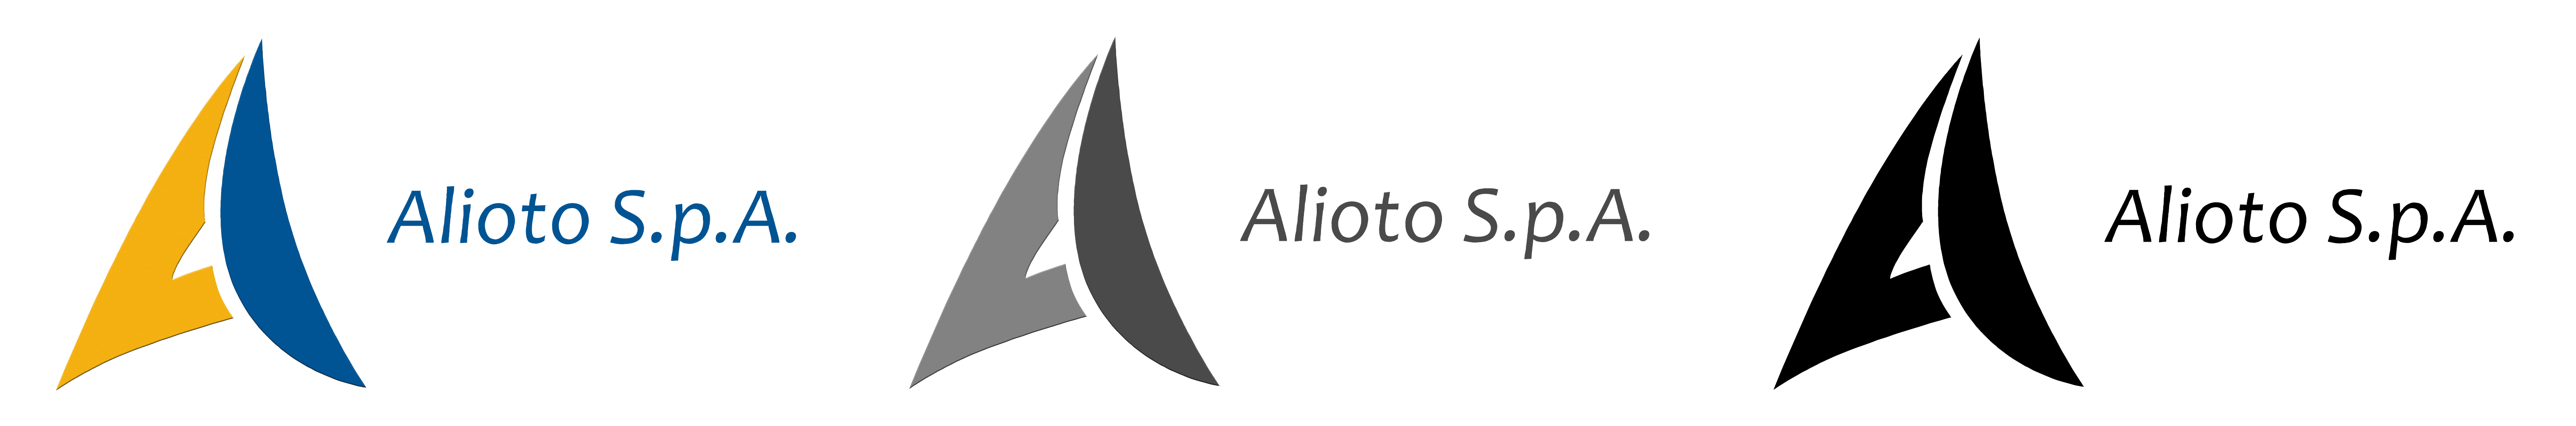 vettorializzazione-logo-alioto3-smart